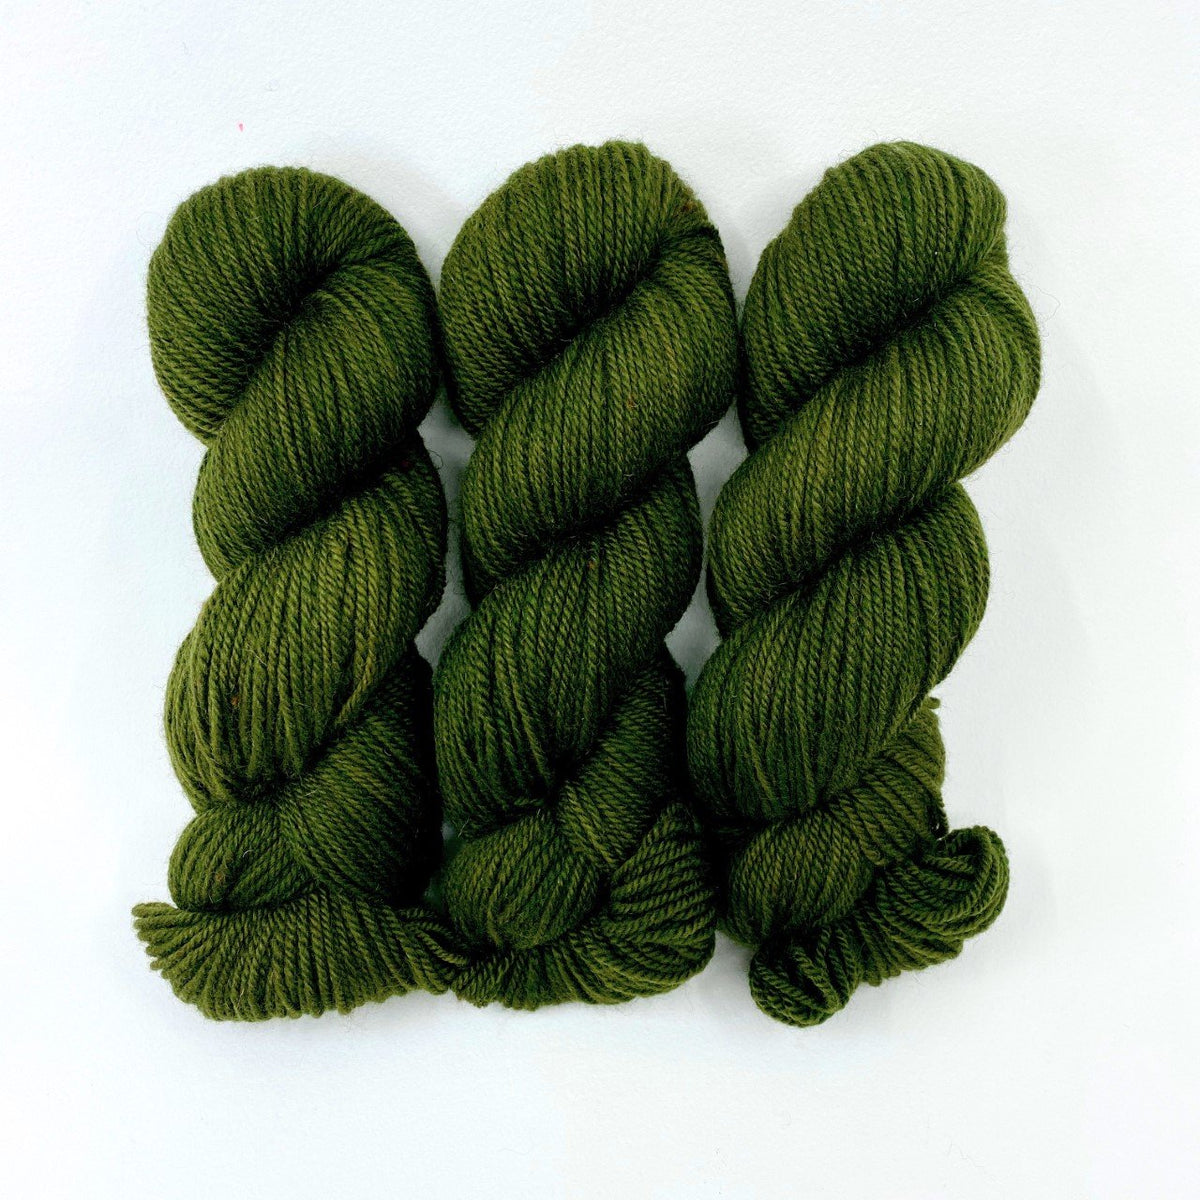 Cypress-Lascaux DK - Dyed Stock